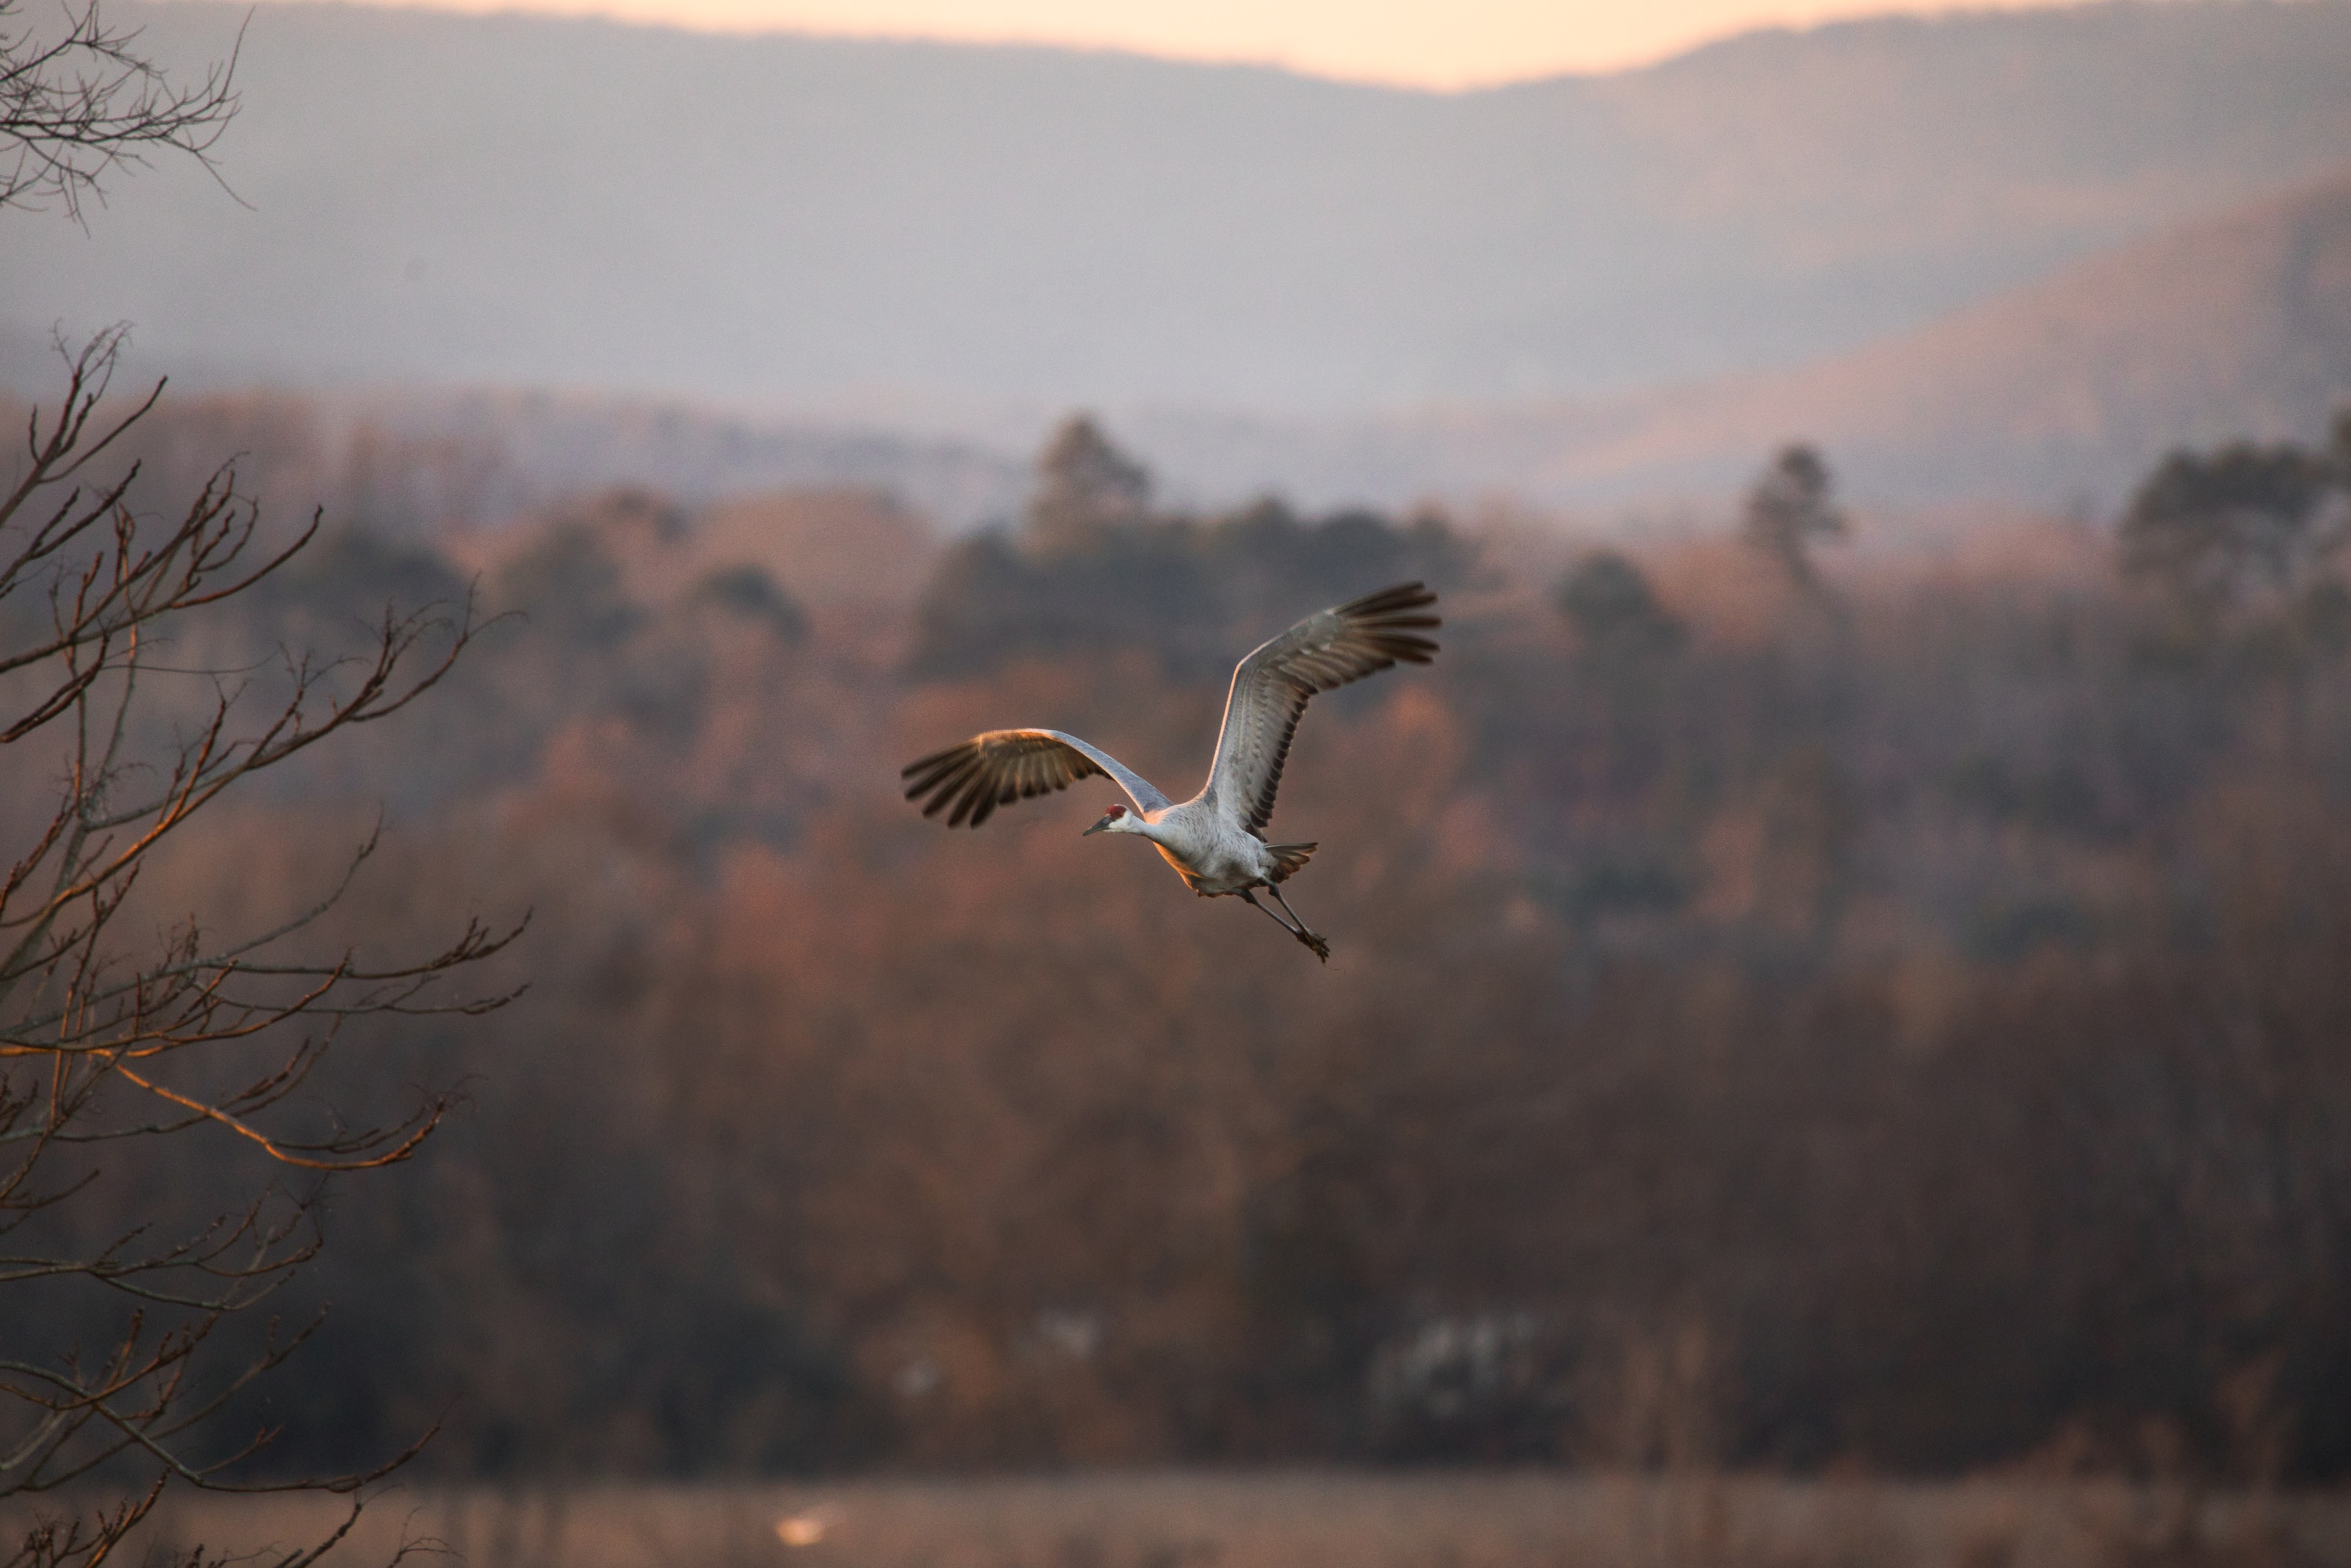 A sandhill crane in flight over an open plain